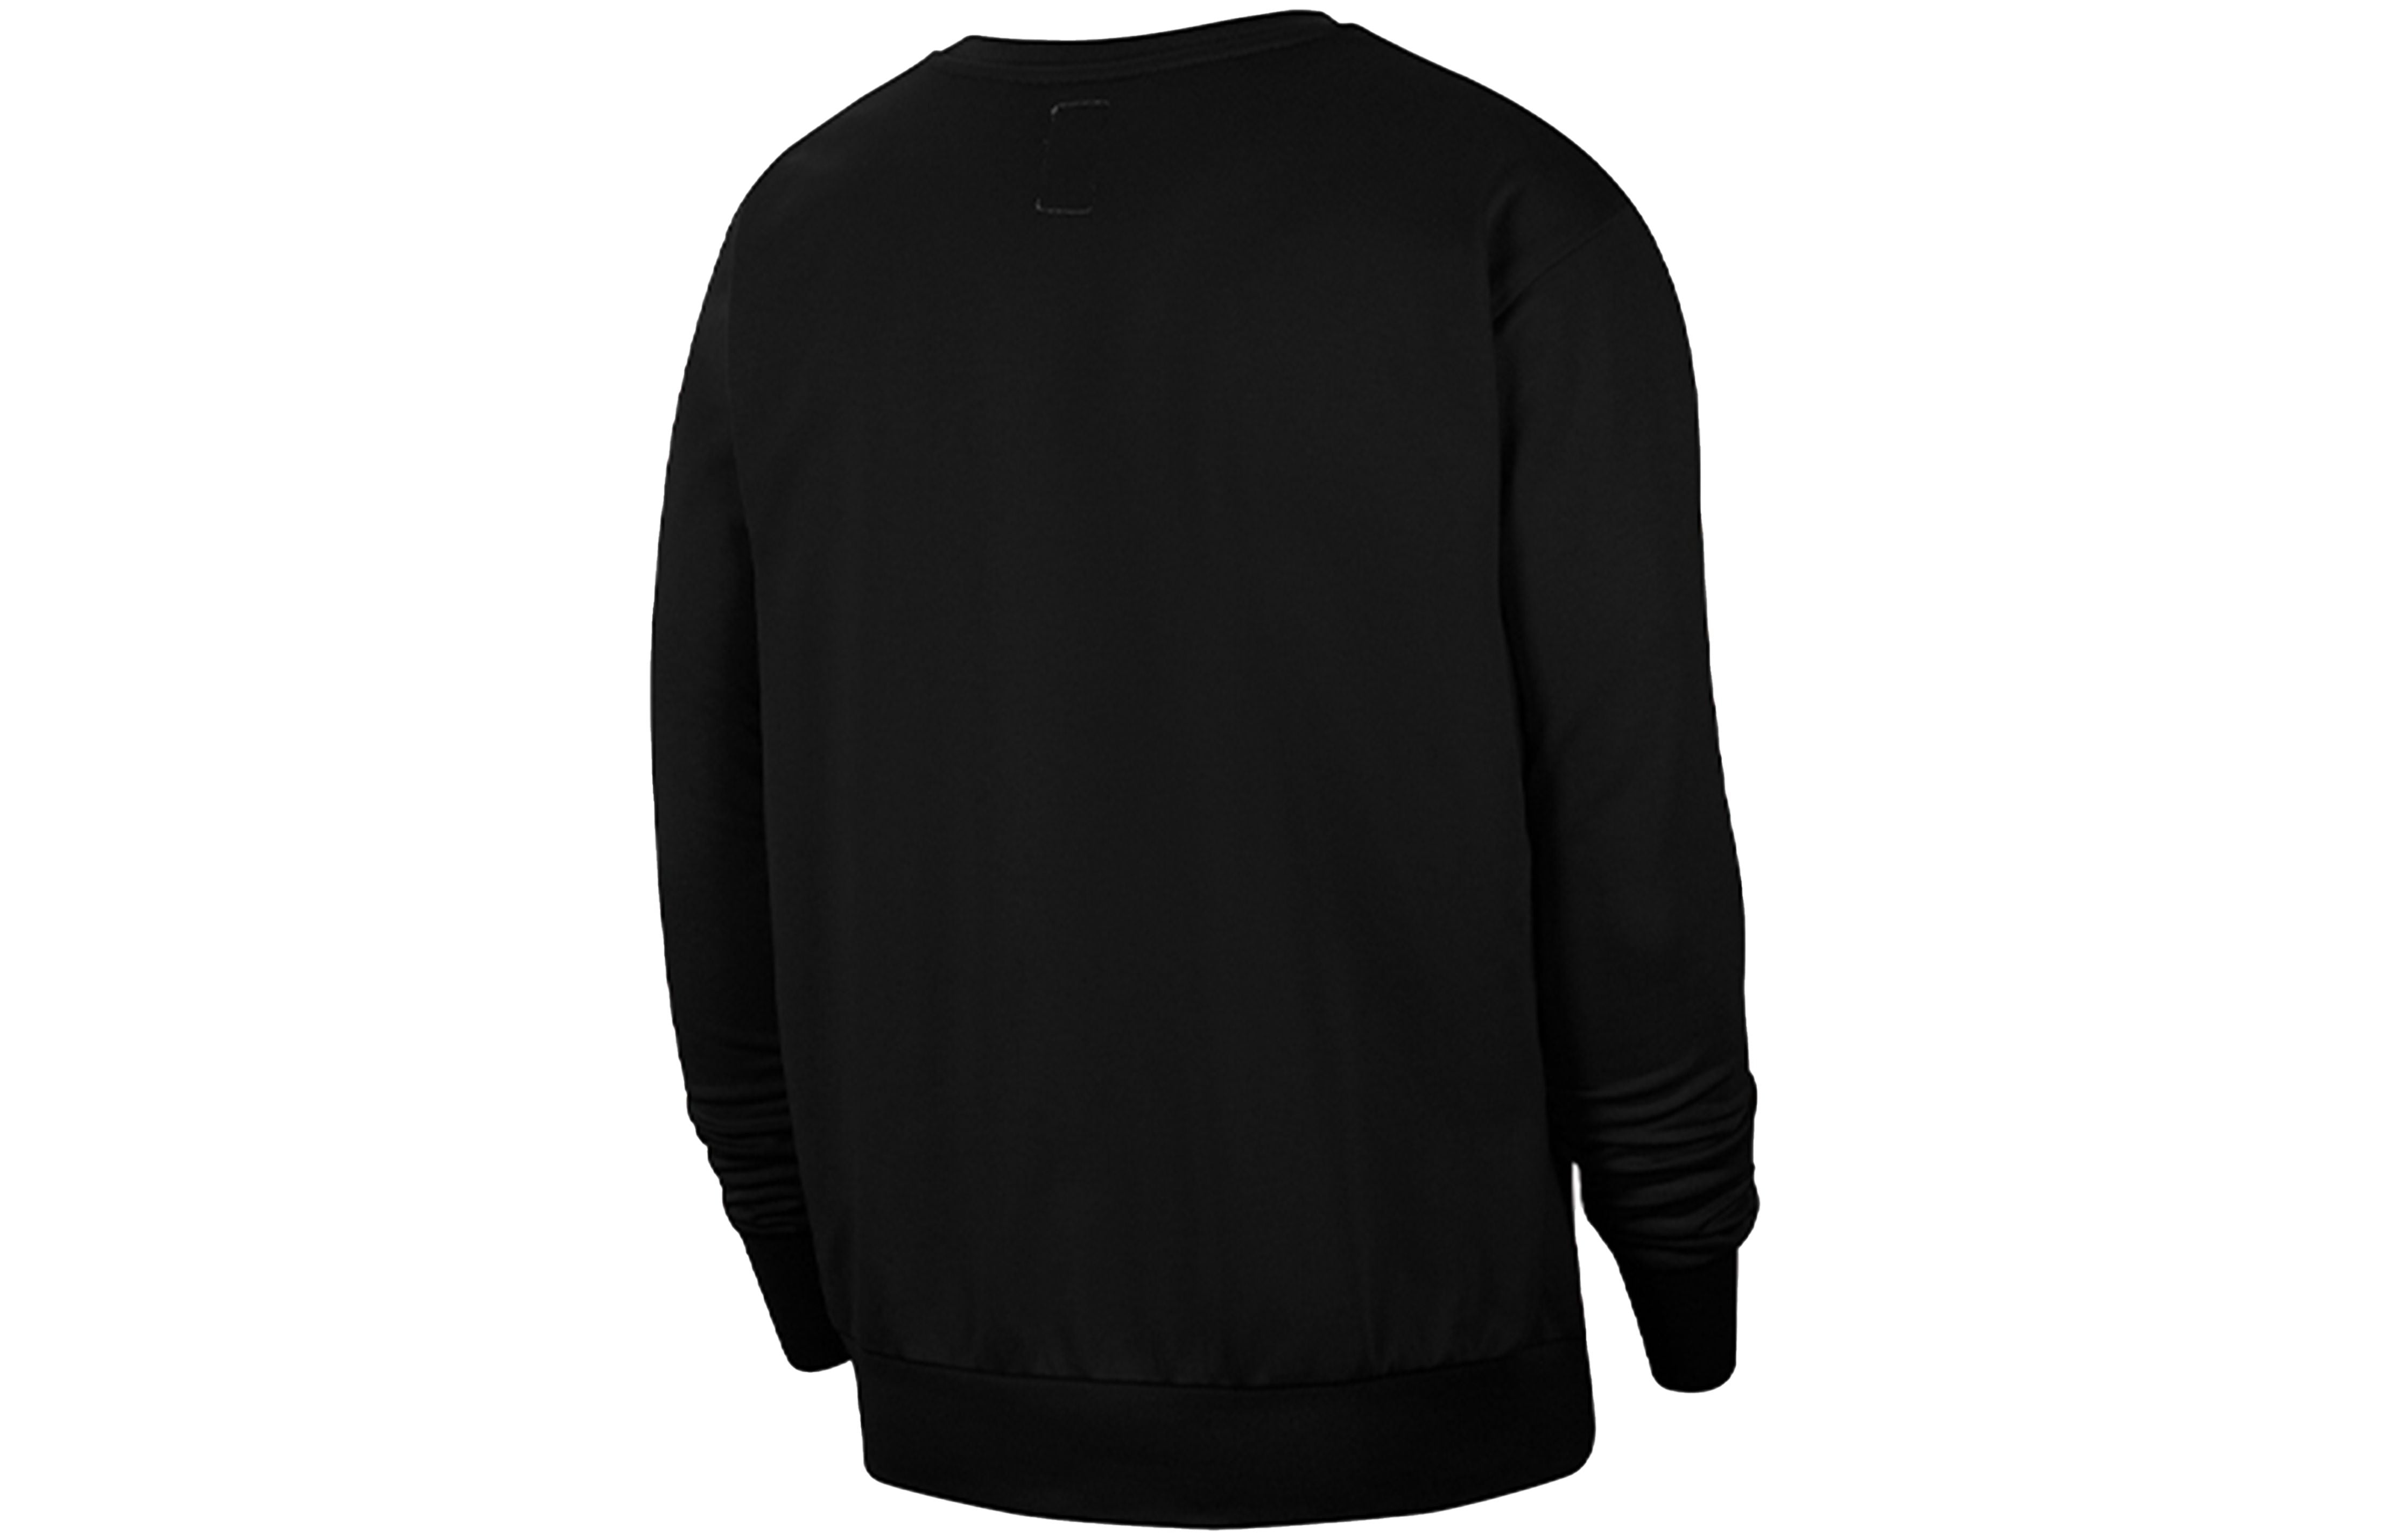 Nike Standard Issue Dri-FIT Crew Neck Sweatshirt Black CK6359-010 - 2